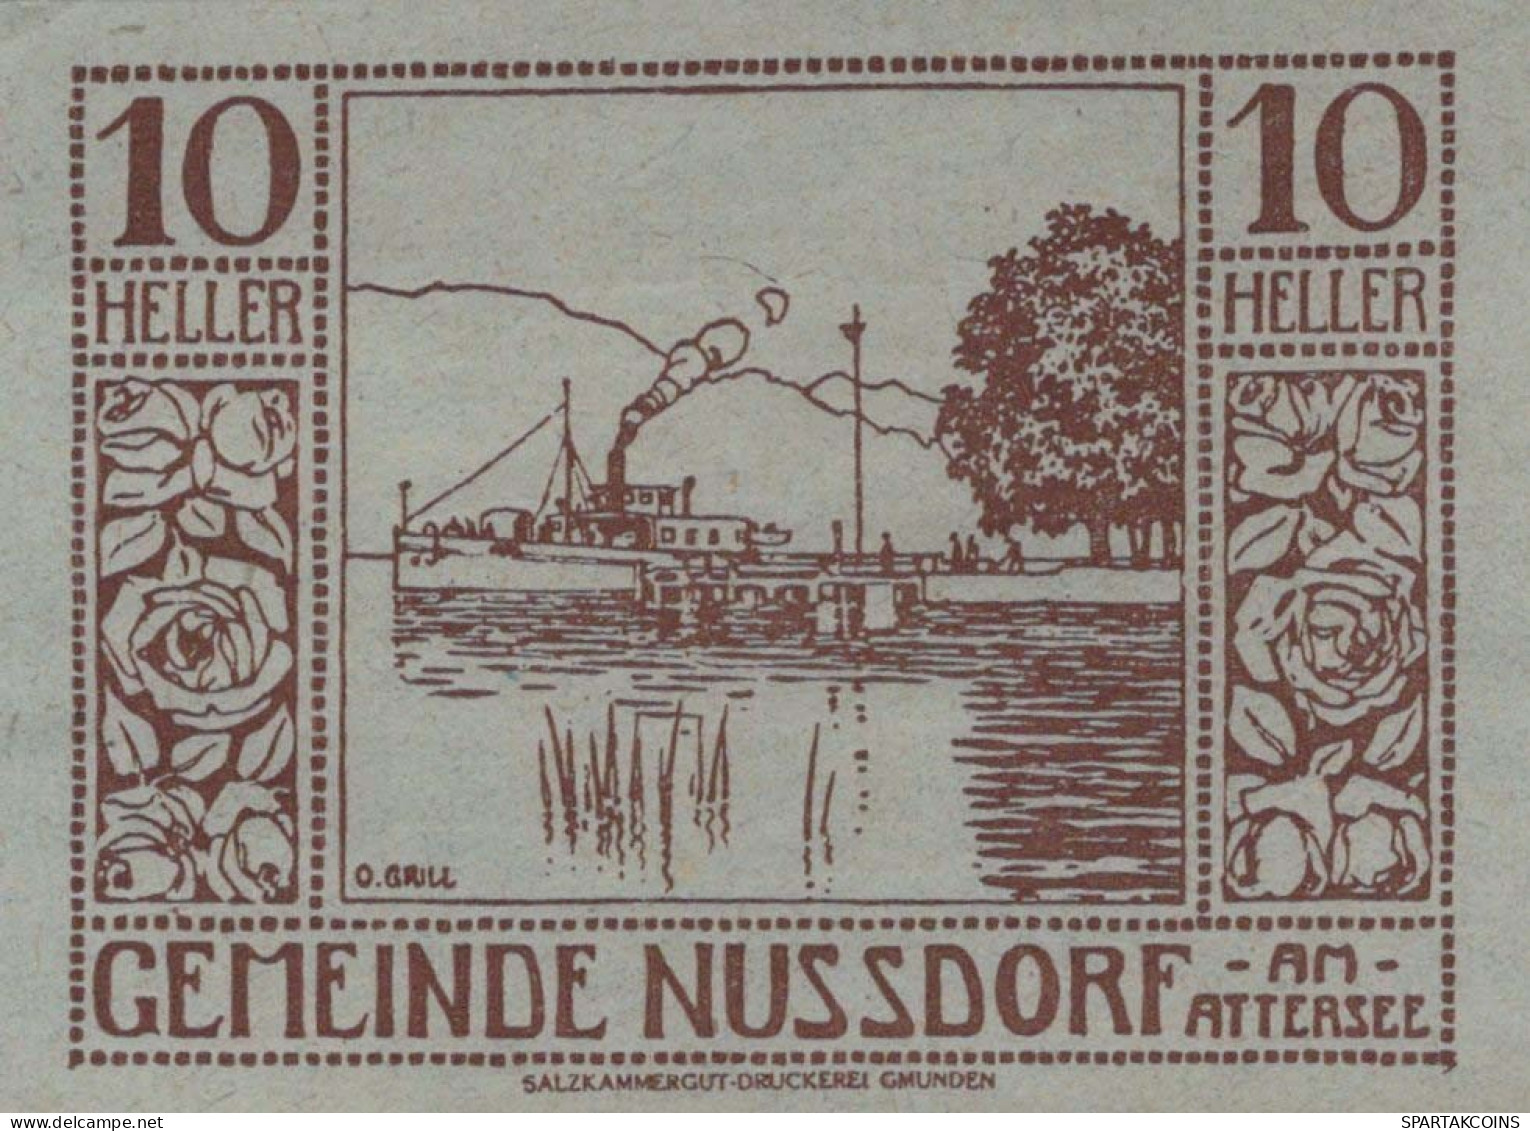 10 HELLER 1920 Stadt NUSSDORF AM ATTERSEE Oberösterreich Österreich Notgeld Papiergeld Banknote #PG958 - [11] Emisiones Locales